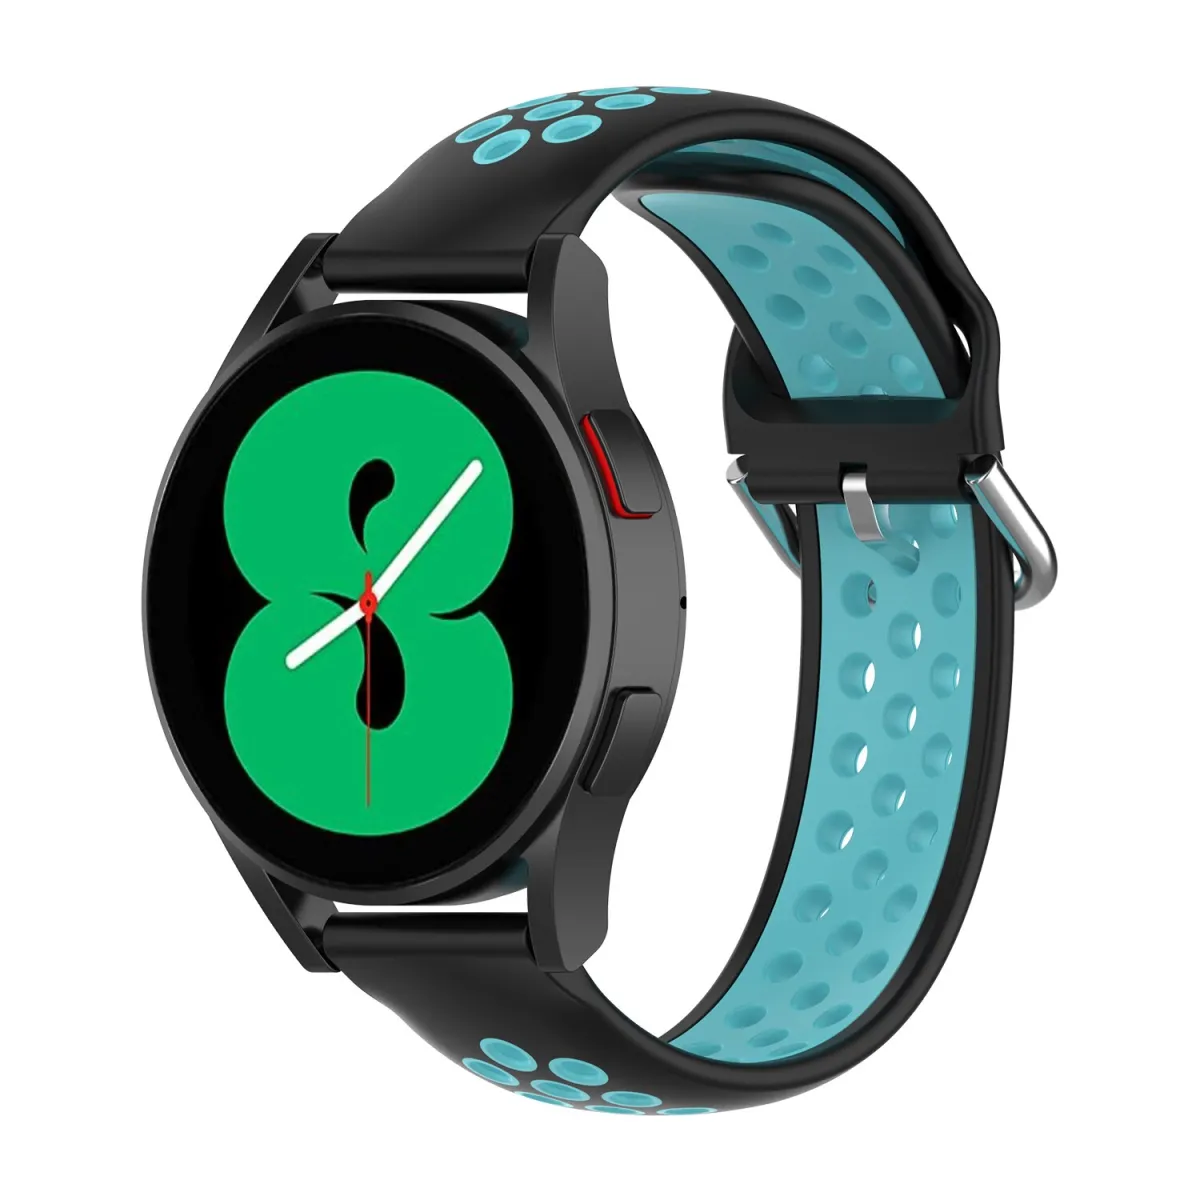 Dây Đeo Nike đồng hồ Samsung sẽ khiến bạn trở nên thật sự năng động và sành điệu. Với thiết kế đặc biệt, dây đeo này không chỉ giúp bạn thoải mái khi sử dụng mà còn giúp tô điểm thêm cho chiếc đồng hồ của bạn.